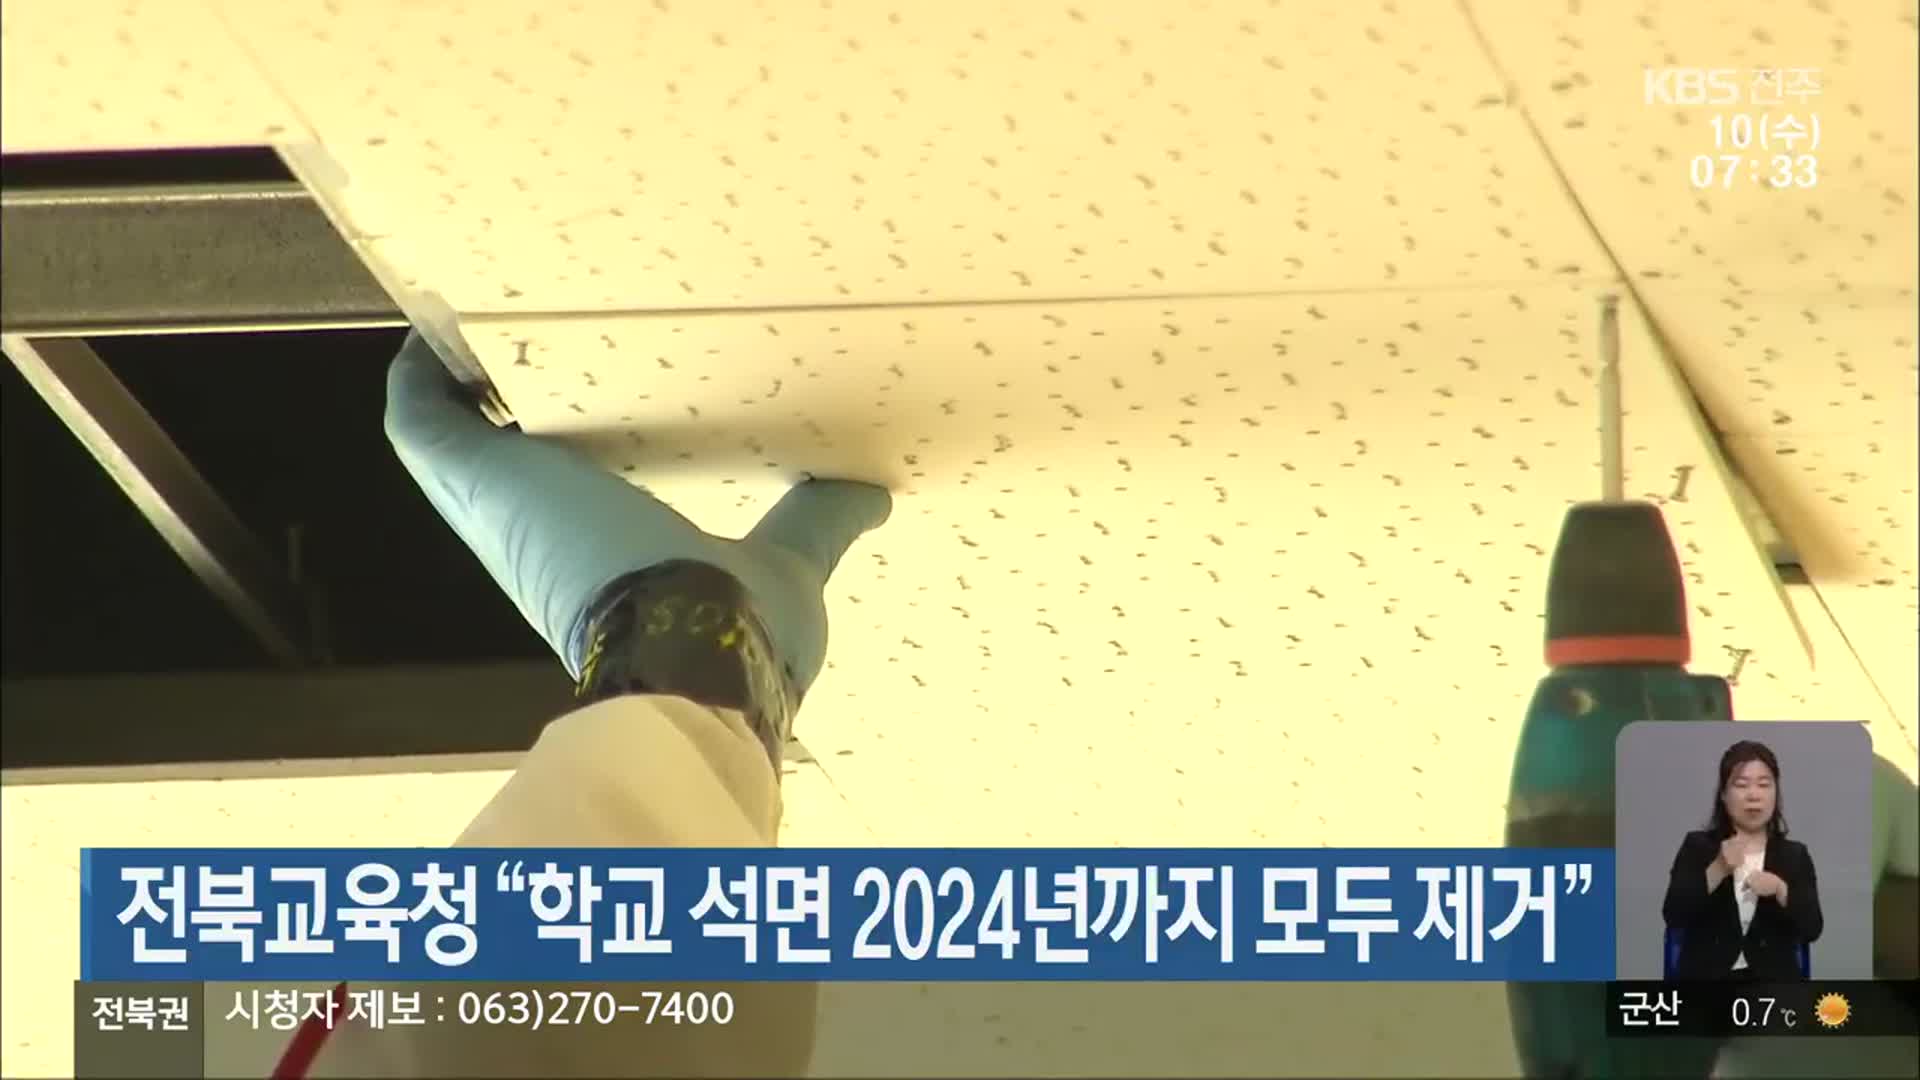 전북교육청 “학교 석면 2024년까지 모두 제거”